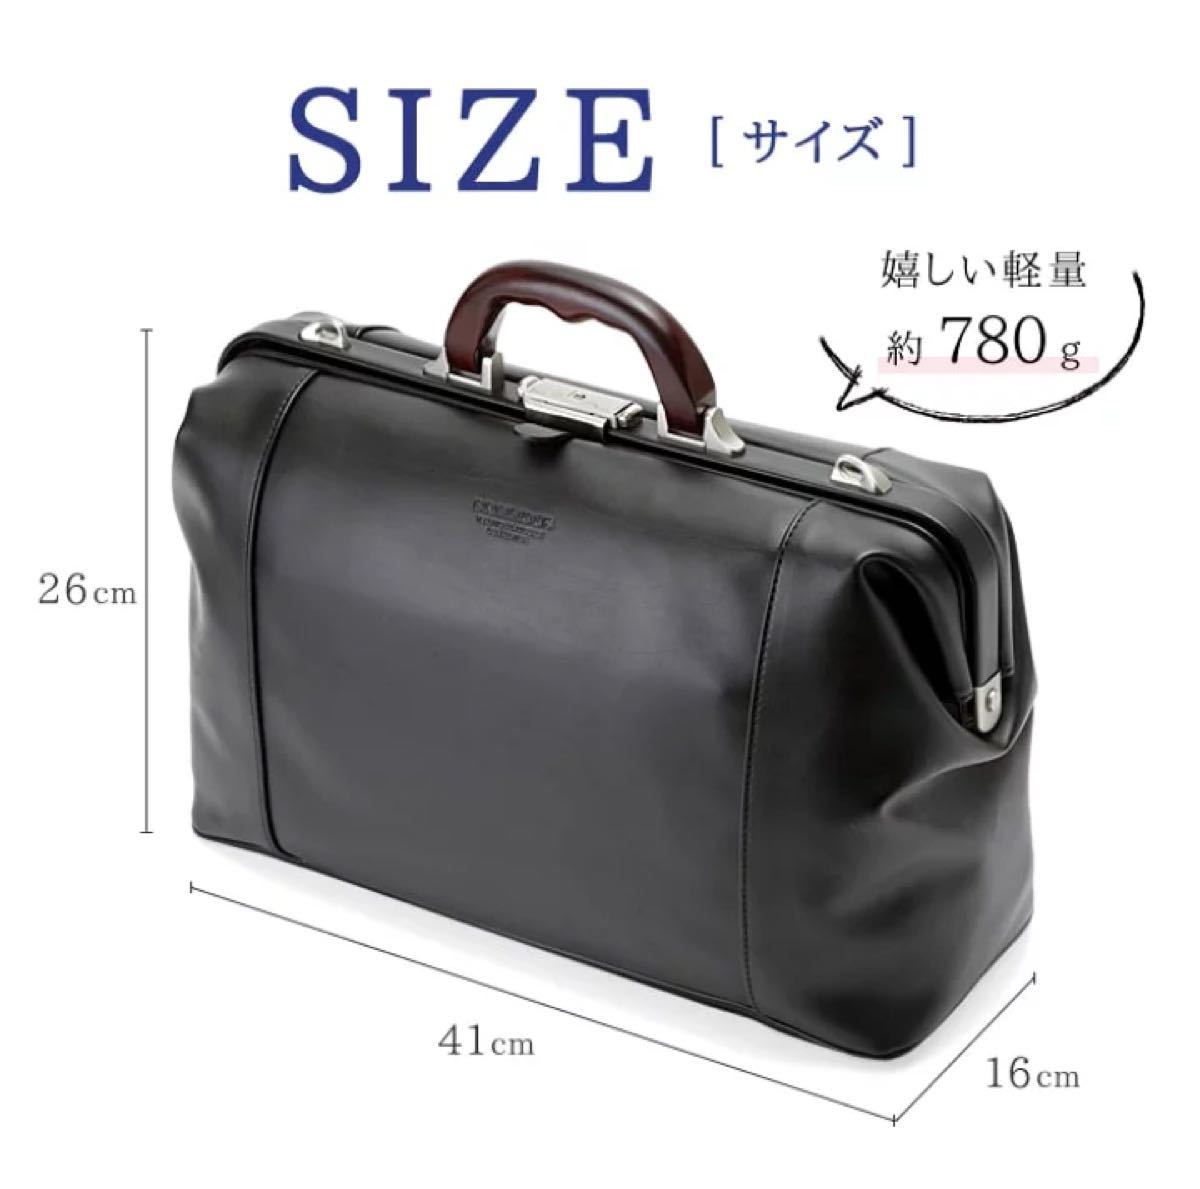 まとめ割引 ダレスバッグ ボストンバッグ 旅行バッグ  軽量 高級 日本製 豊岡 A4ファイル A4 木手 出張  10428